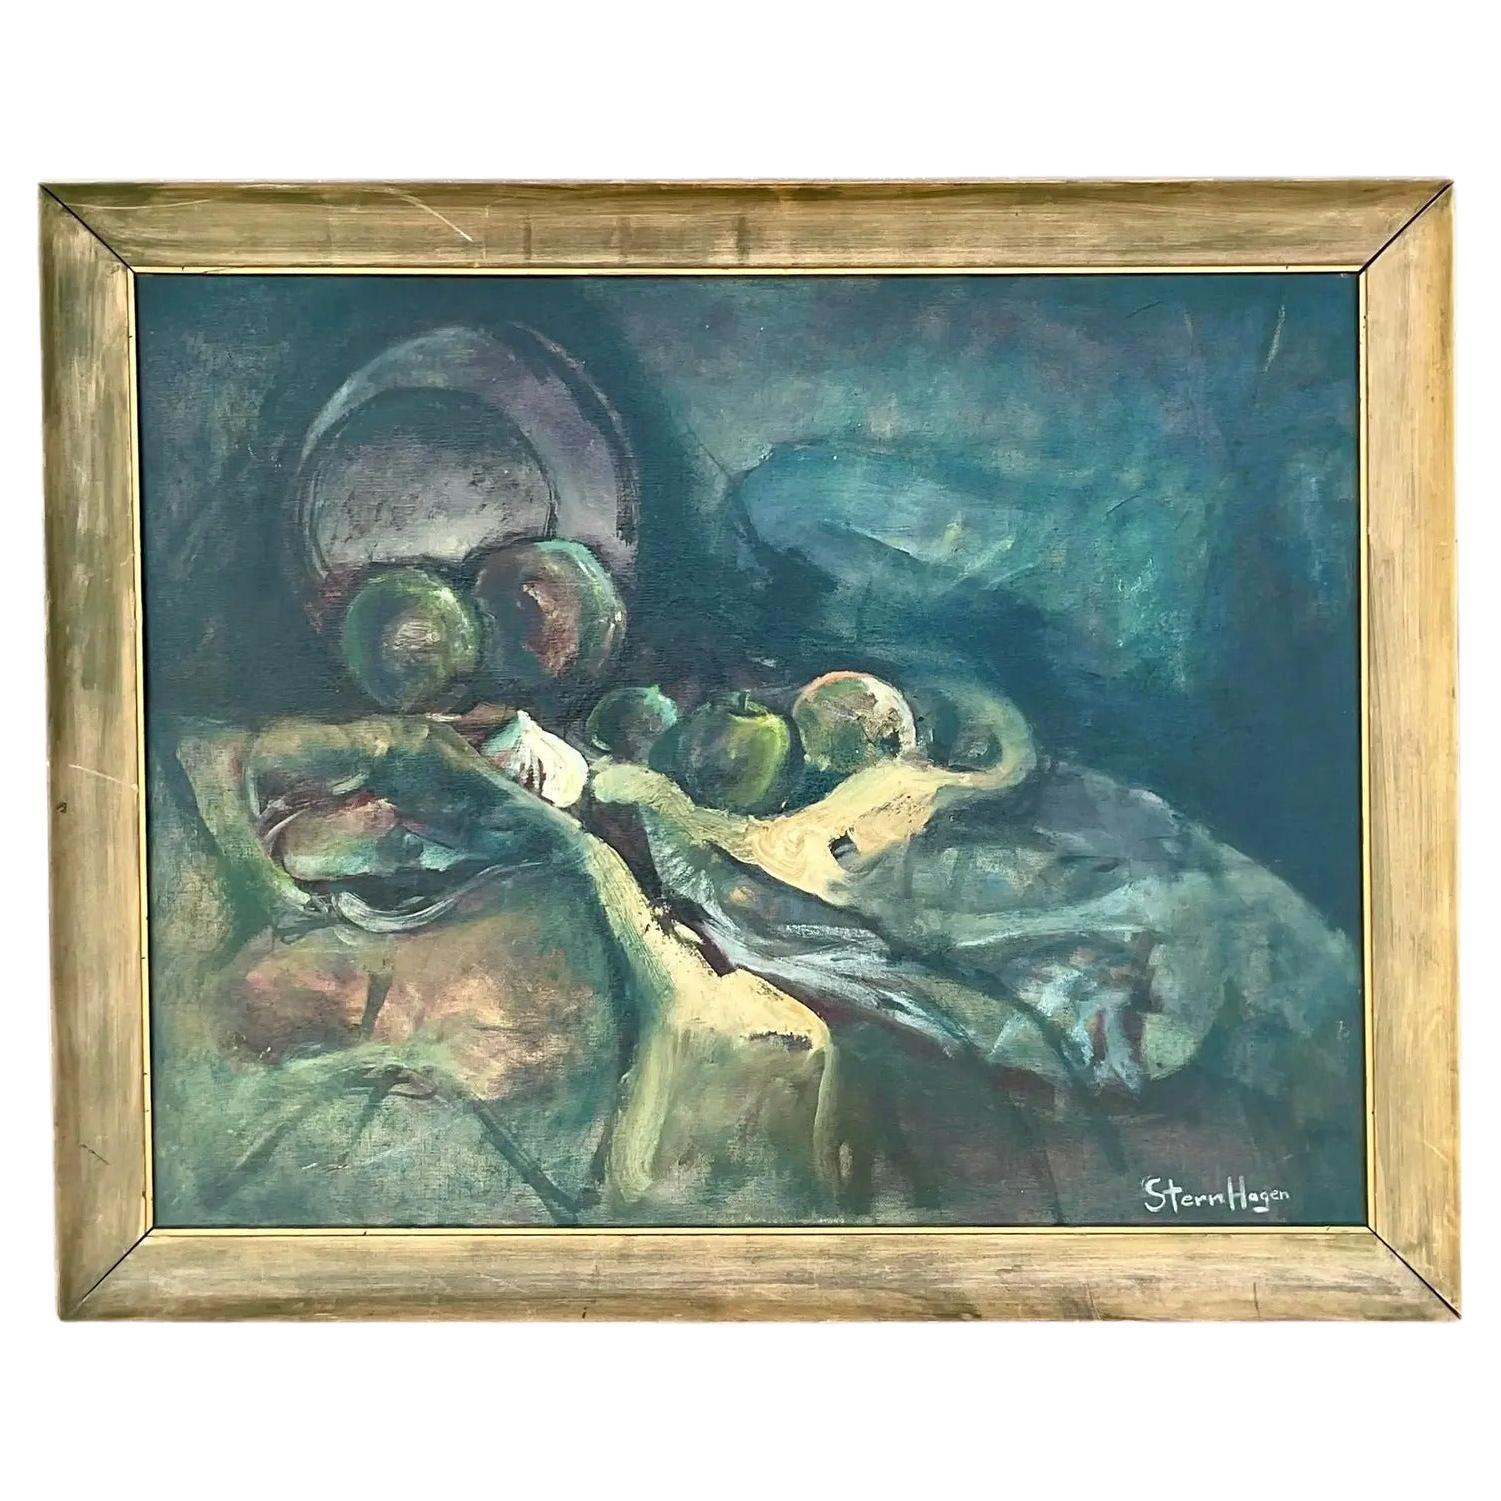 Vintage Boho Original Oil Painting Signed Stern Hagen For Sale